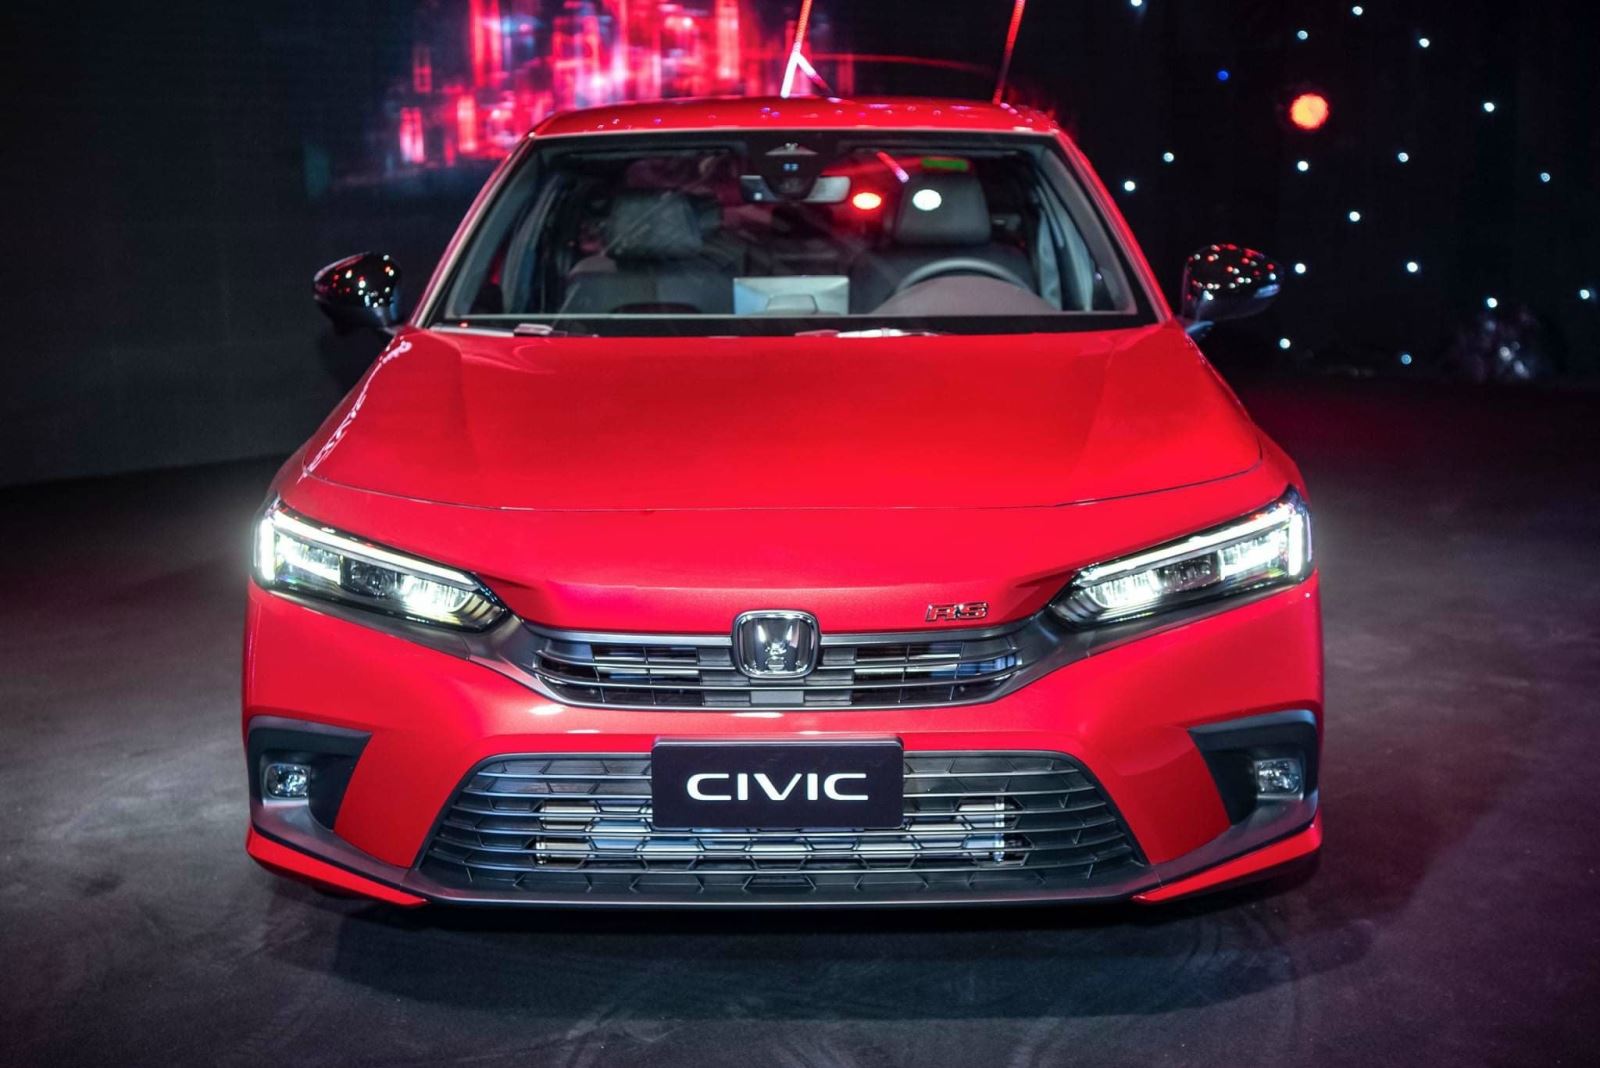 "Civic hứng khởi" là ý tưởng thiết kế chủ đạo của Honda Civic thế hệ 11 dựa trên giá trị cốt lõi "Lấy con người làm trung tâm"